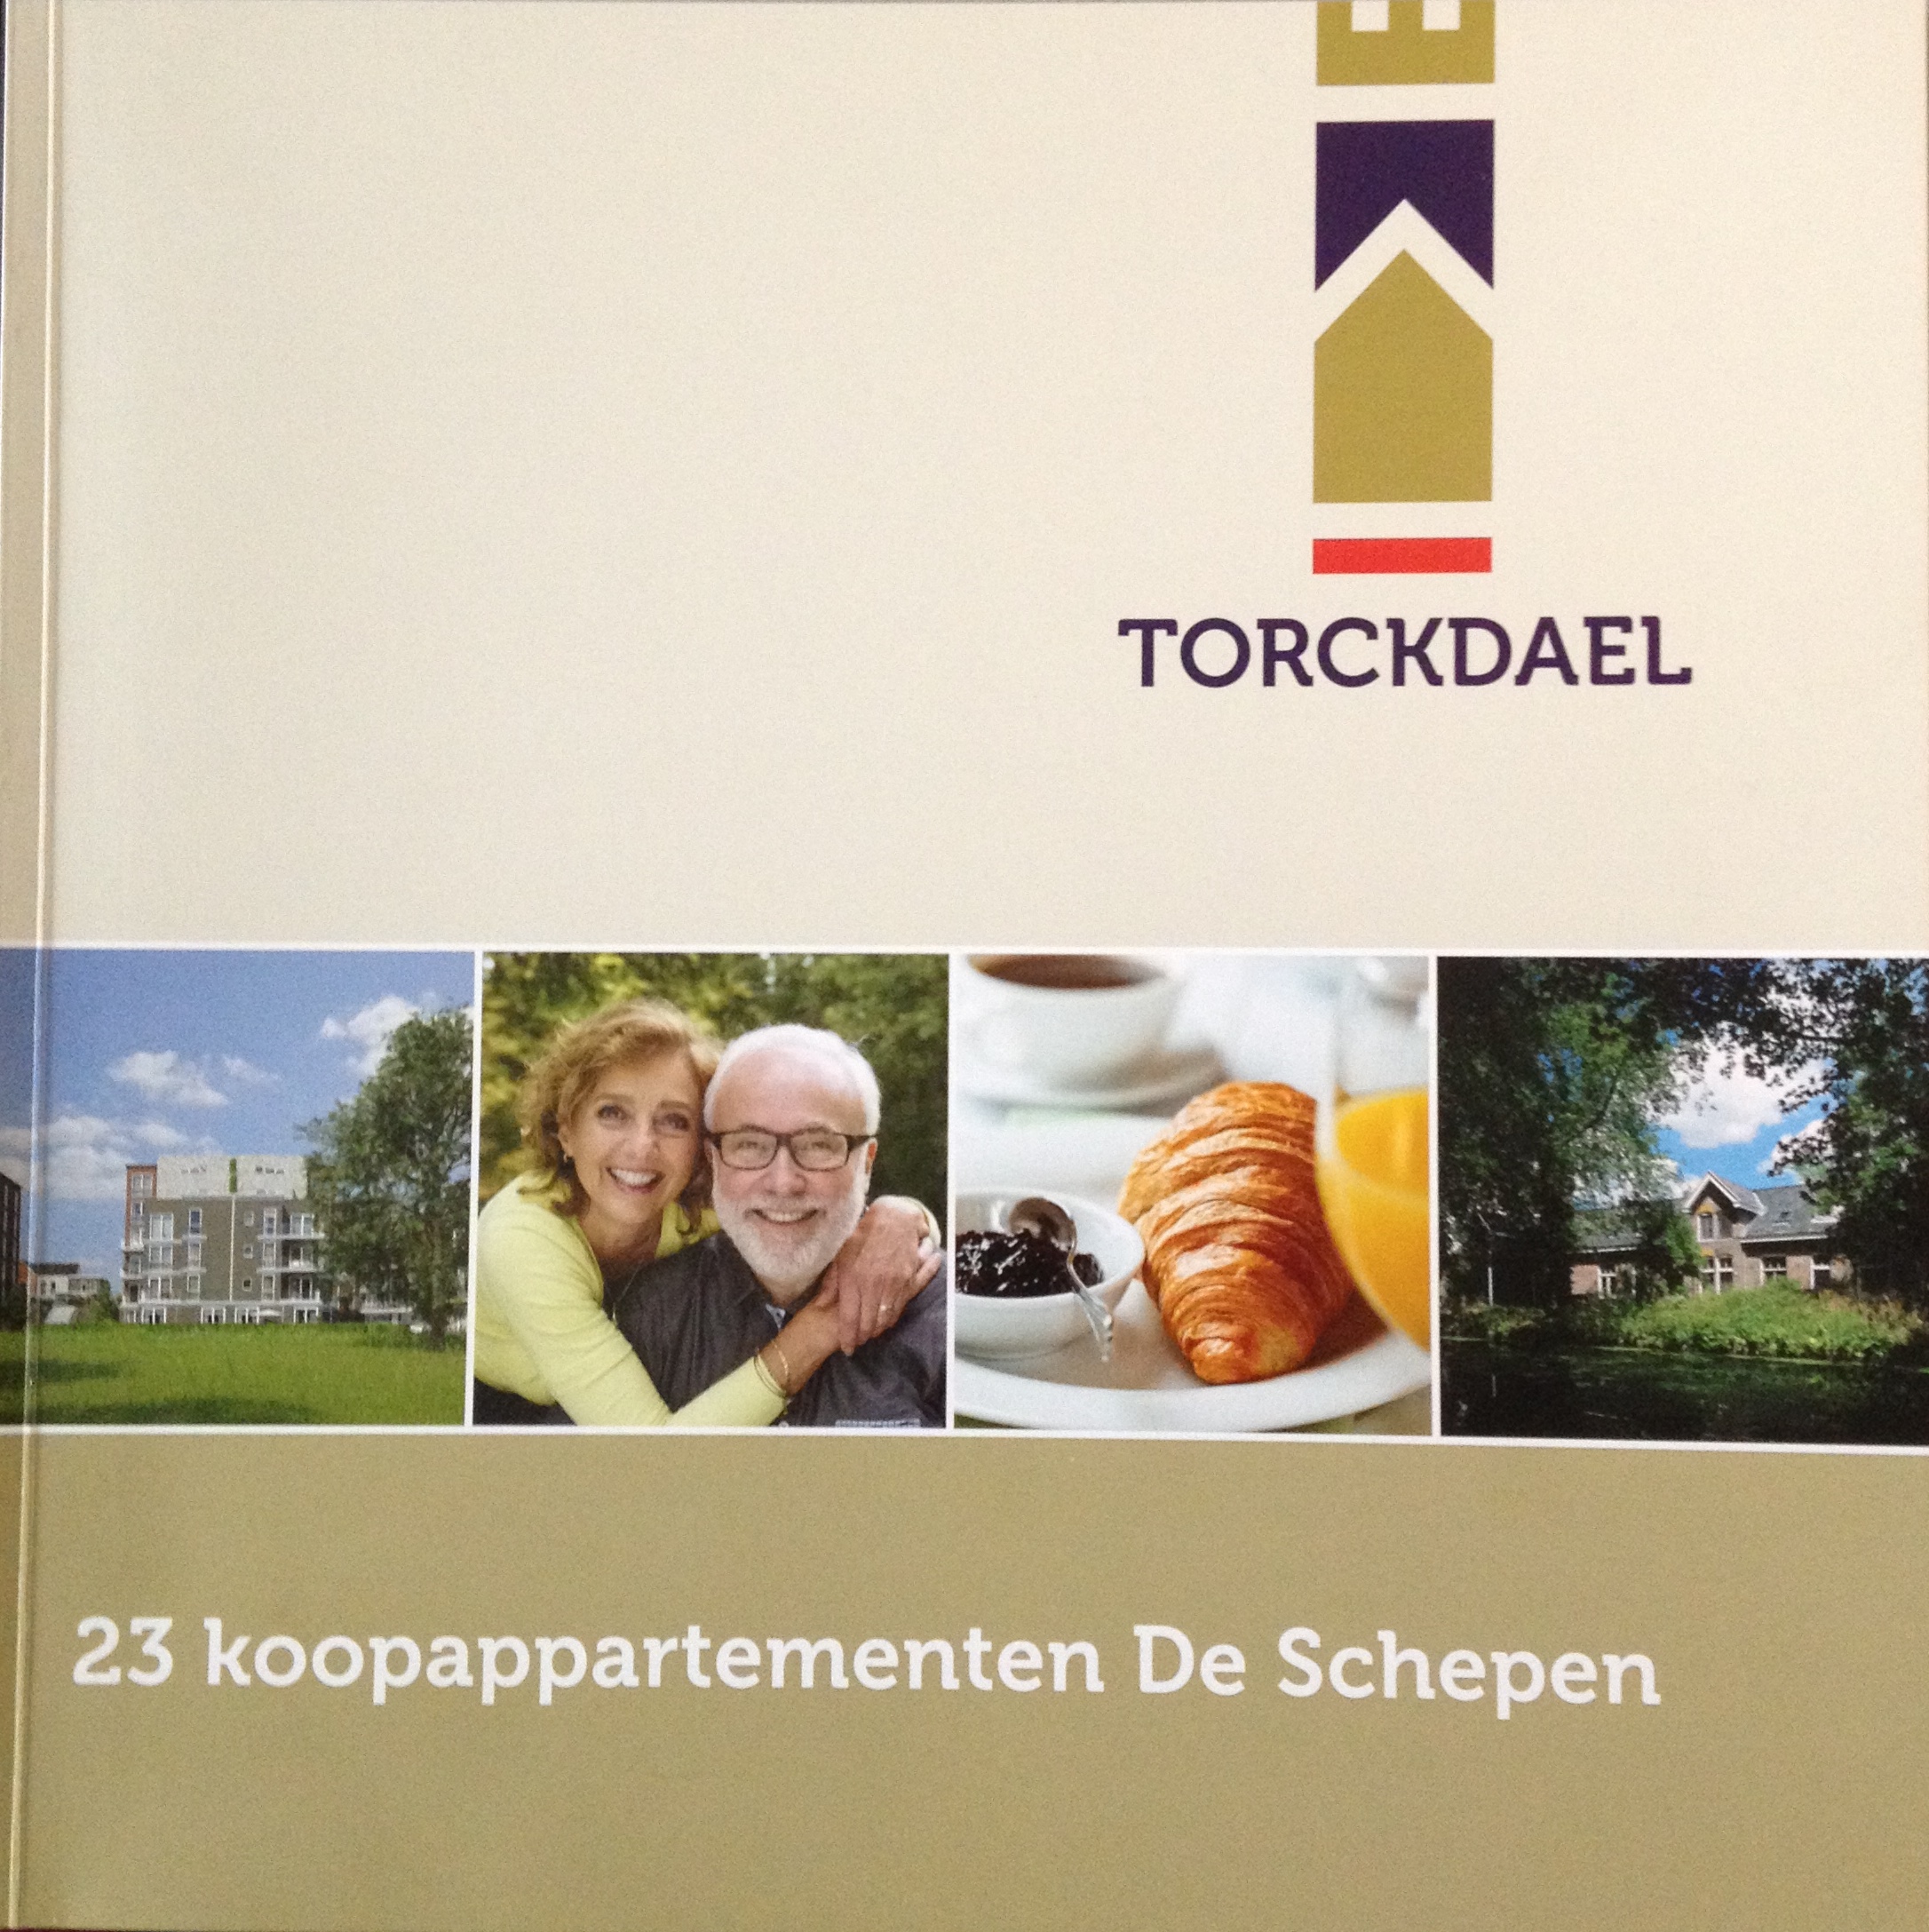 Verkoop 23 appartementen Torckdael van start!